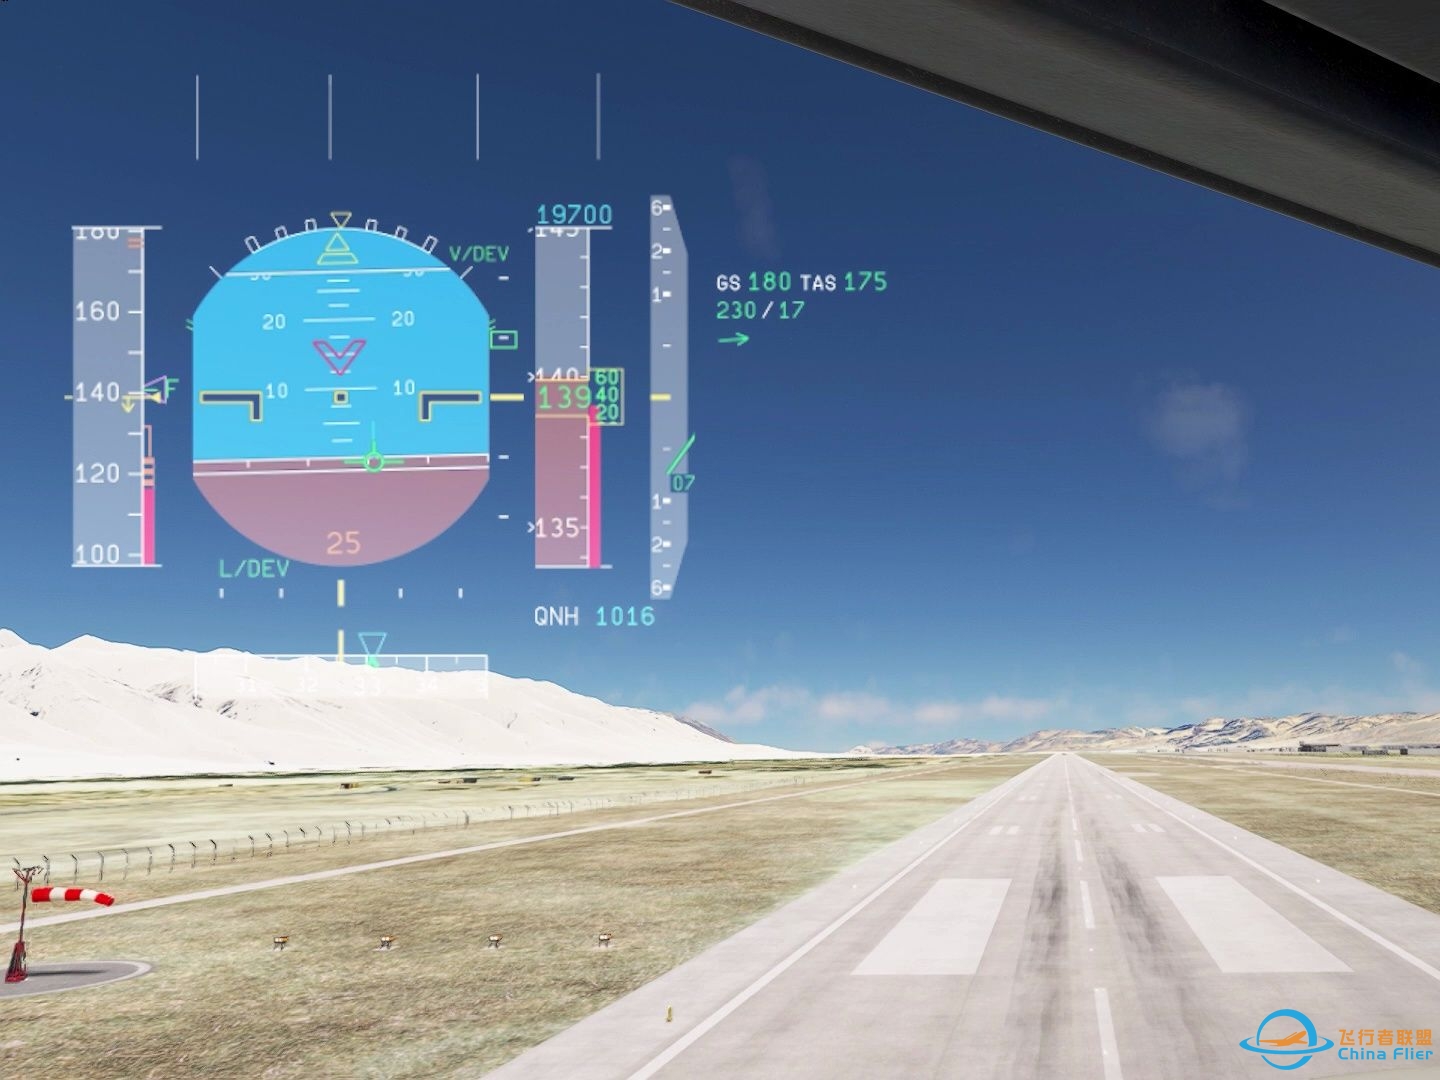 【模拟飞行2020】阿里 | 昆莎 | RNPAR 跑道33进近第一视角-1363 